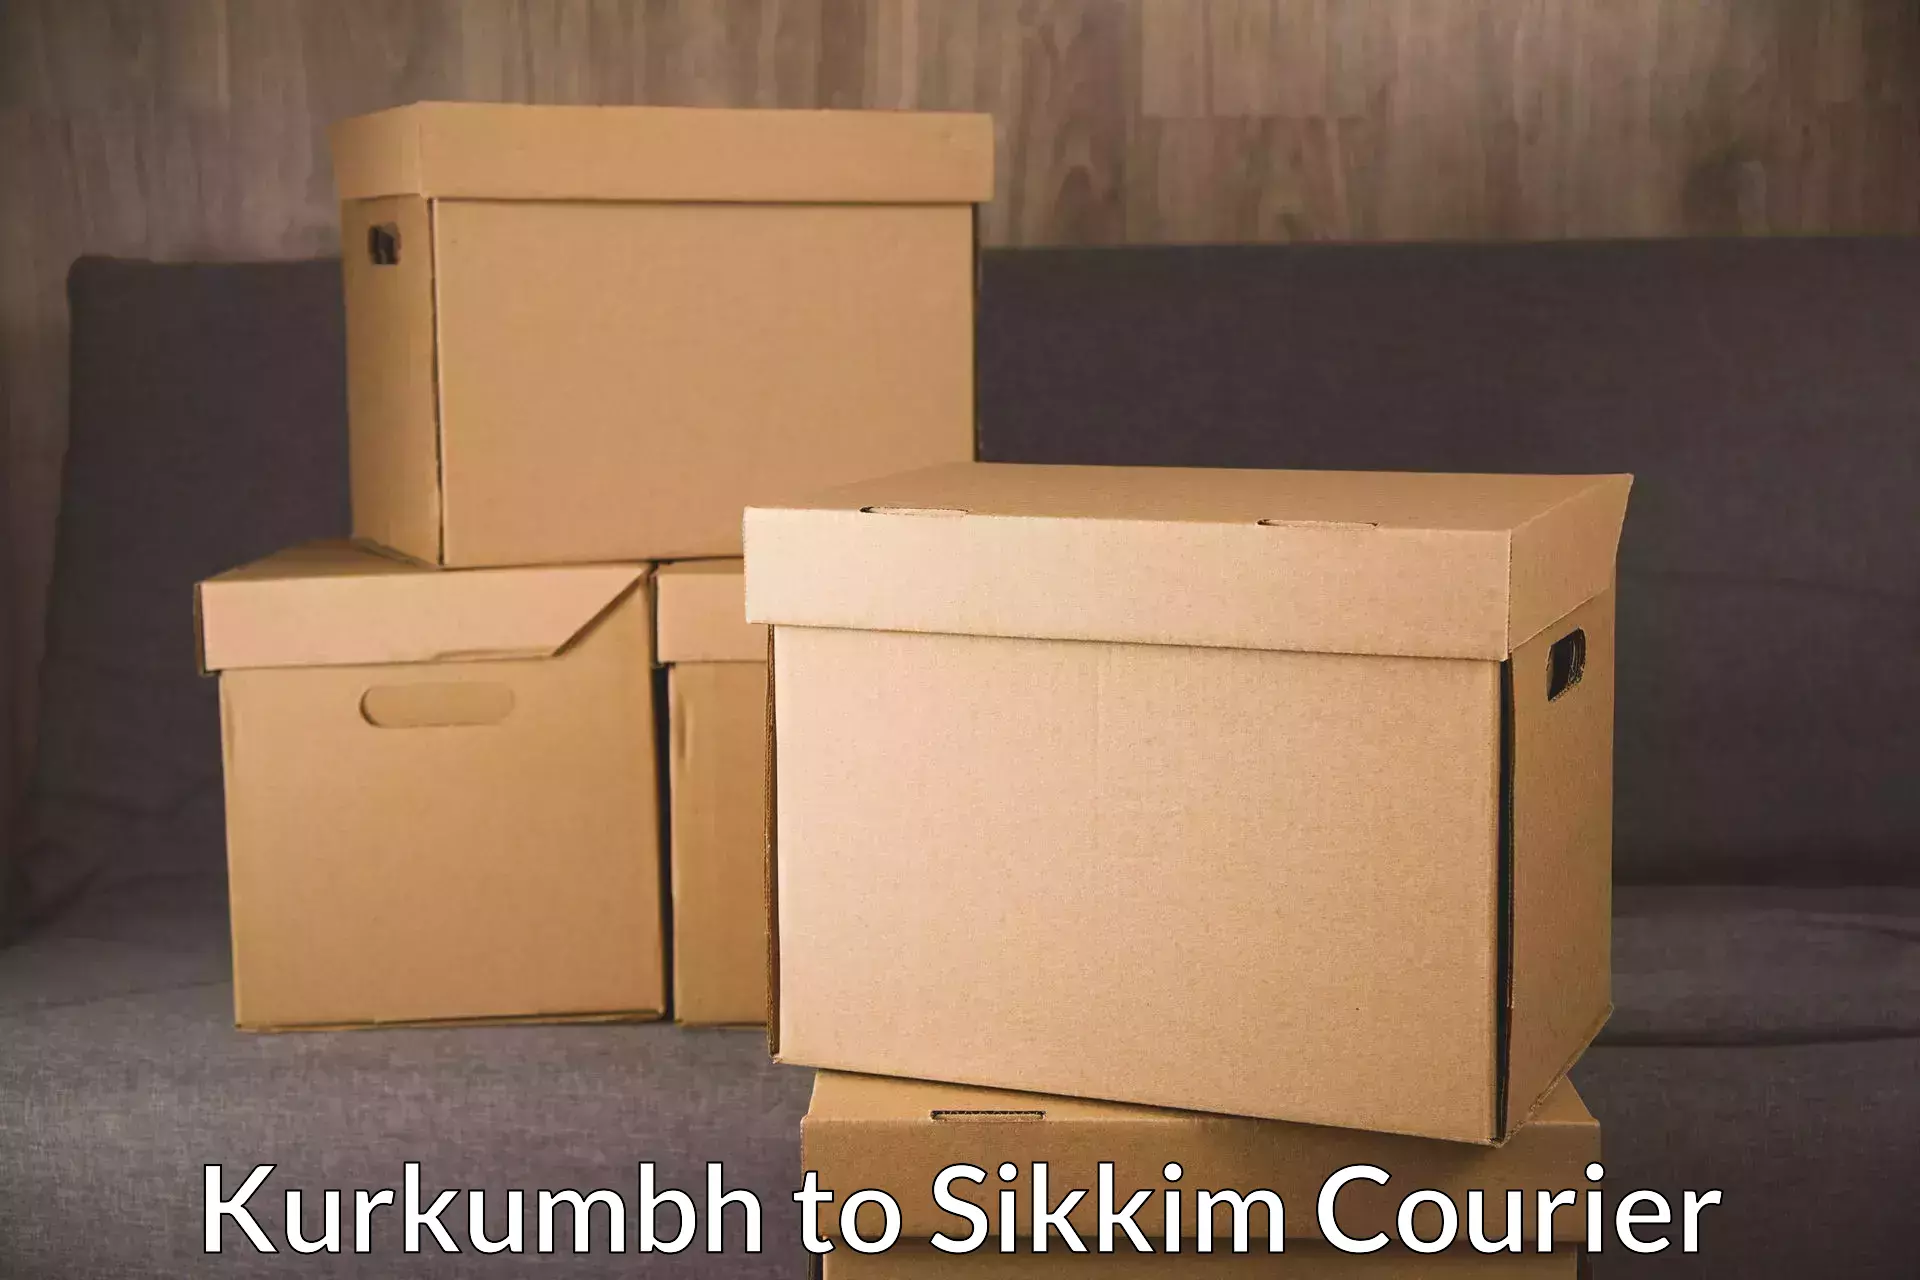 High-capacity shipping options Kurkumbh to Pelling